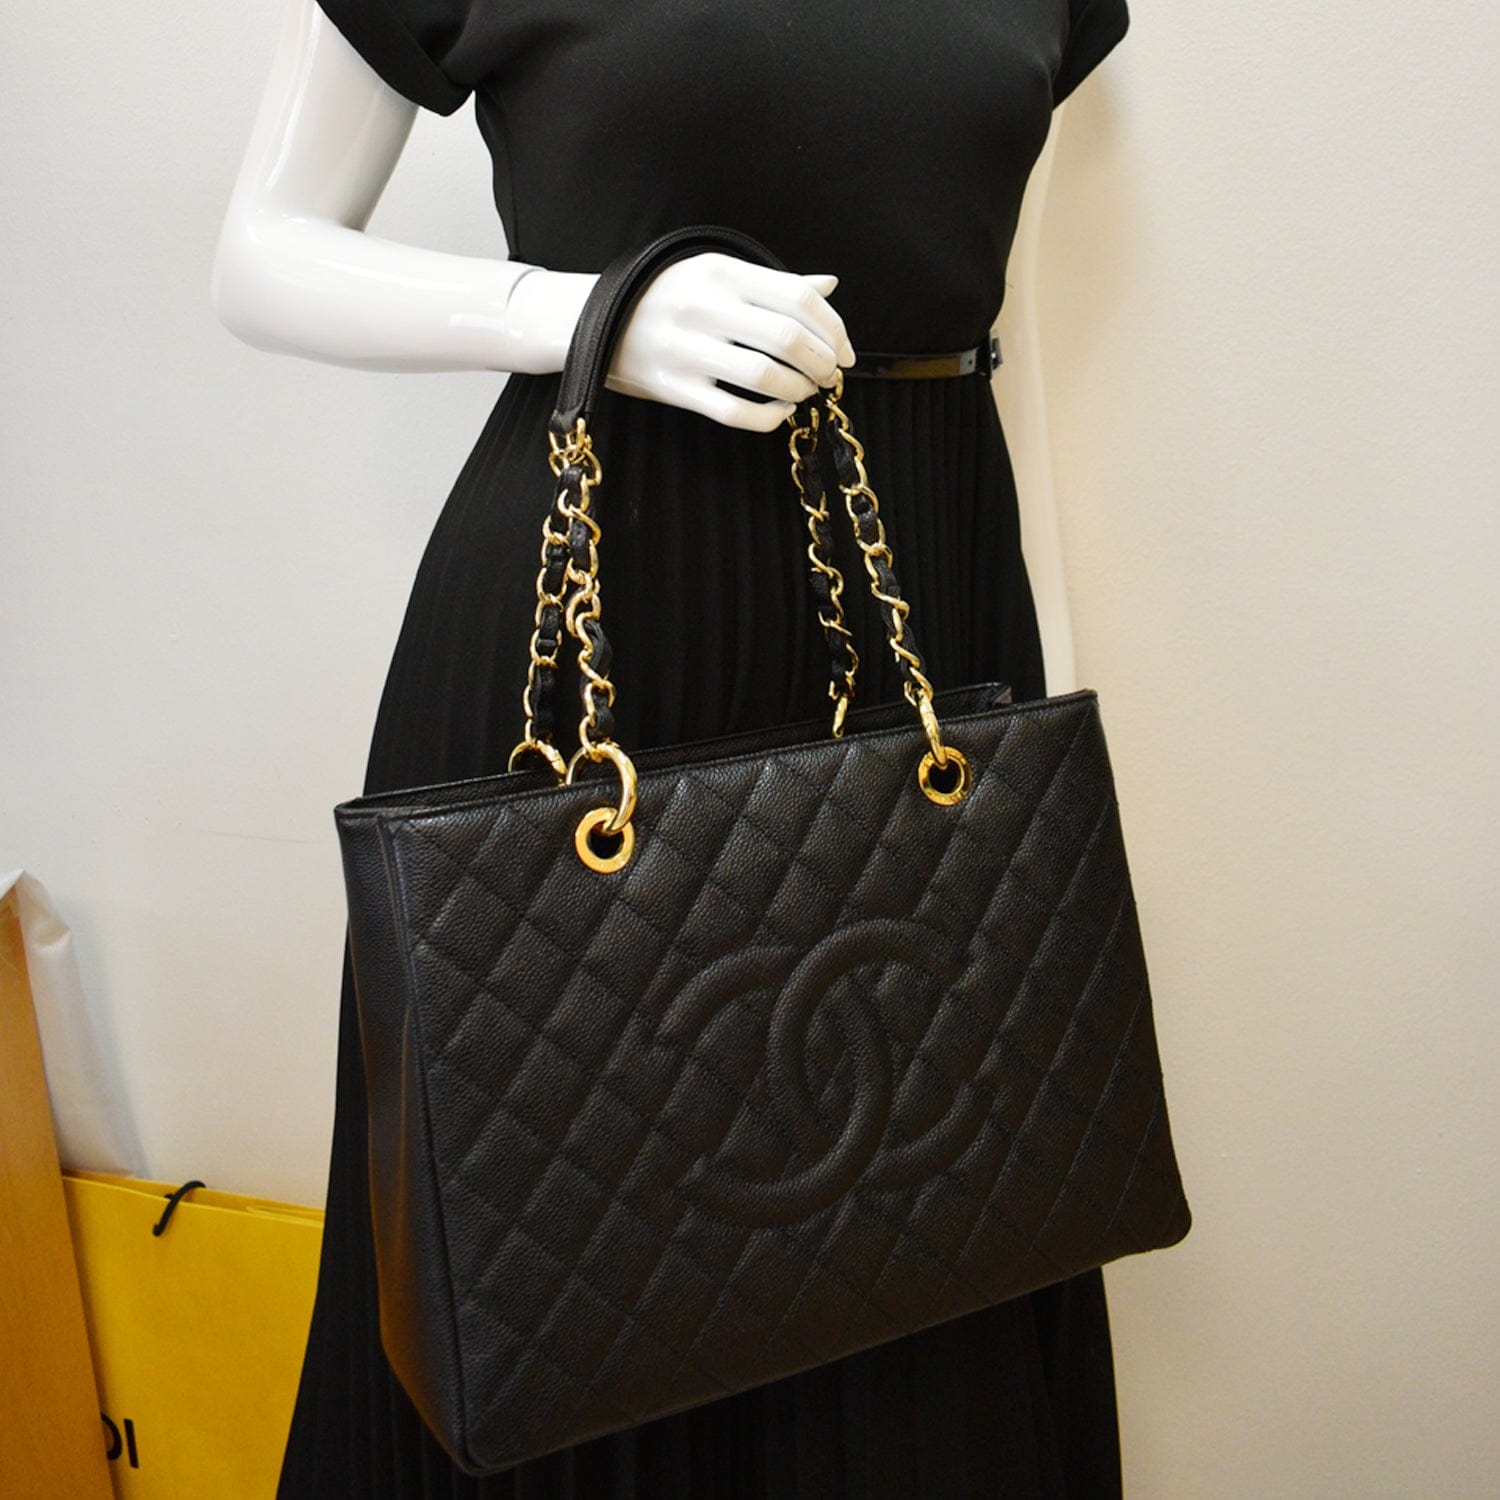 Handbag Chanel Leather Clothing, chanel bag, fashion, black, tote